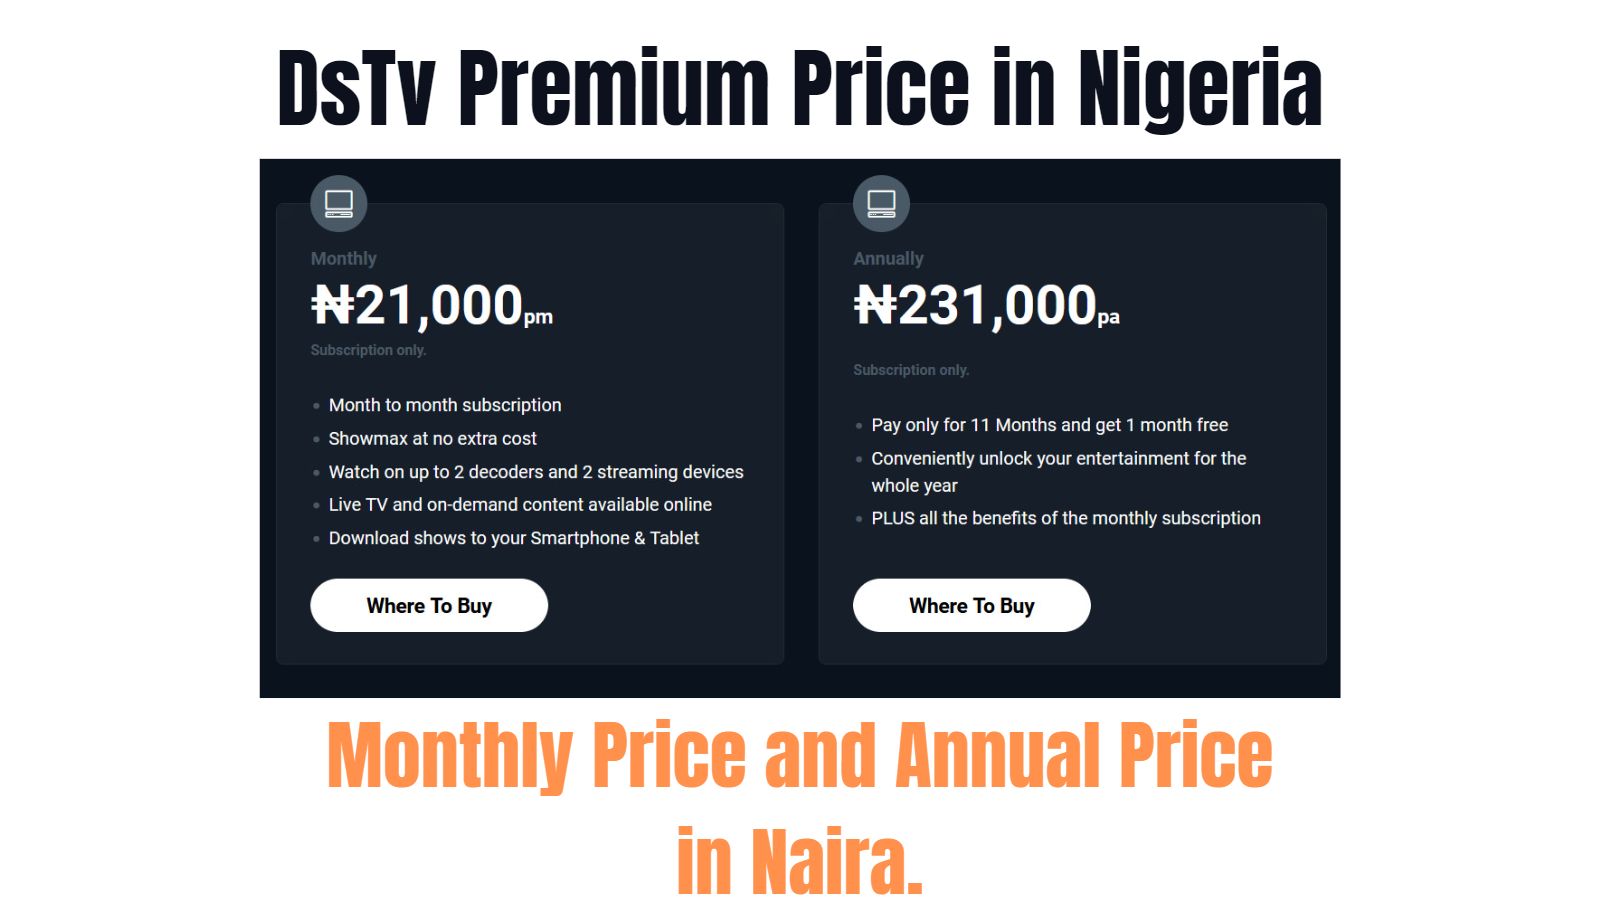 DsTv Premium Subscription Price in Nigeria